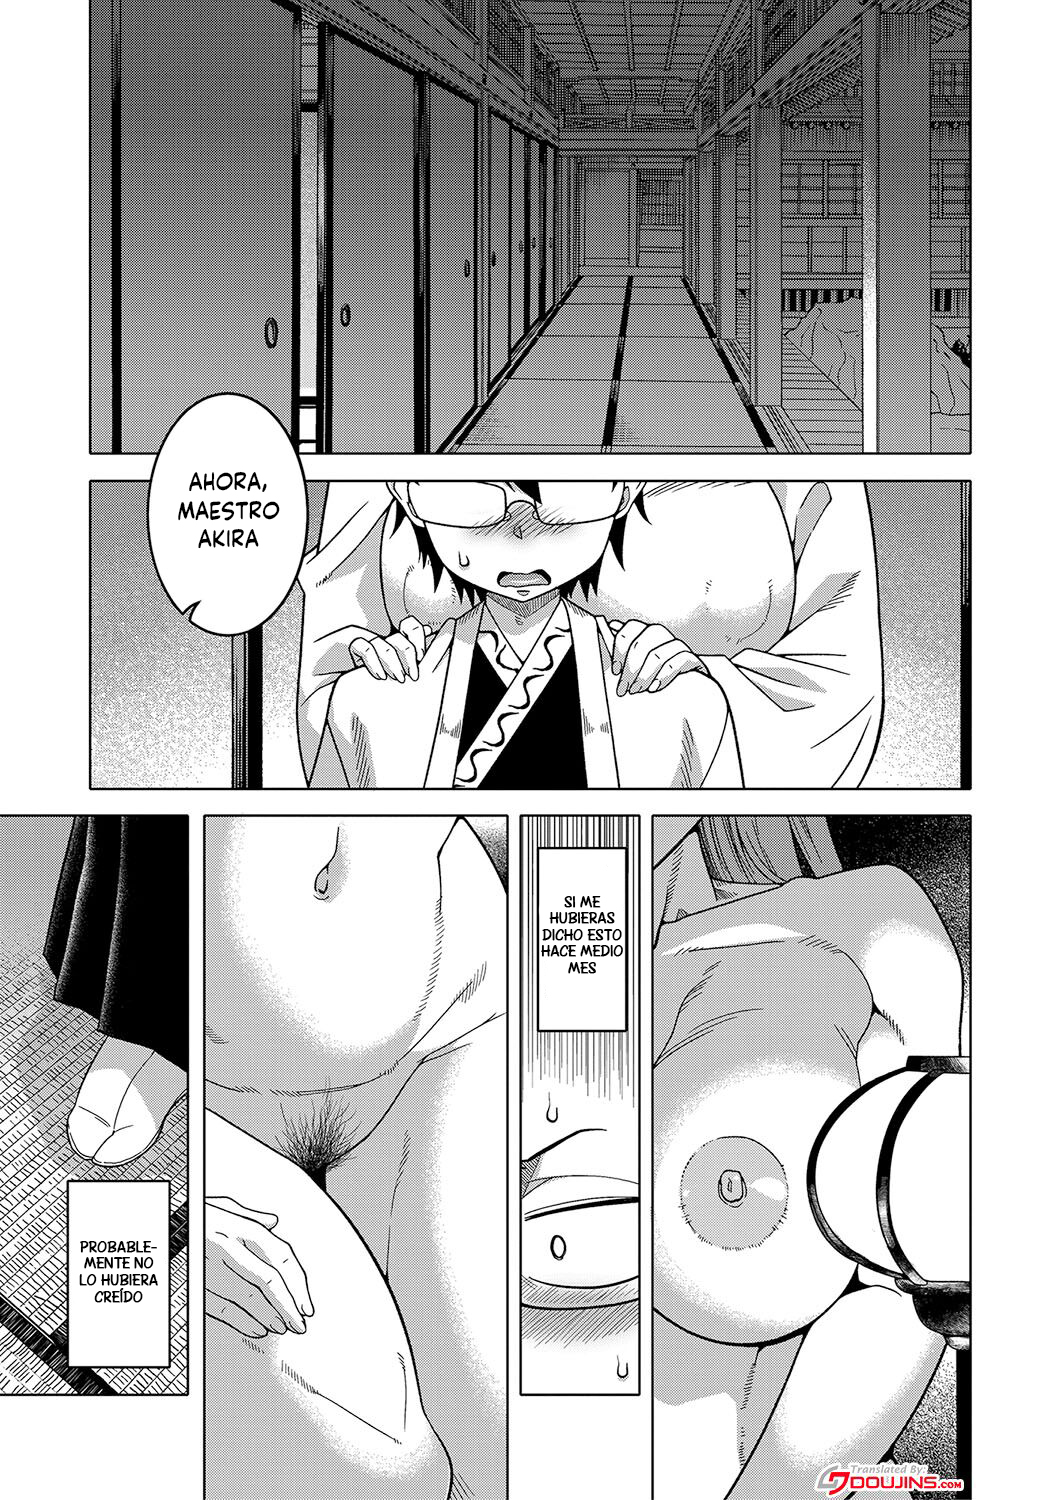 Manga KAMI-SAMA NO TSUKURIKATA-THE MAKING OF A CULT LEADER Chapter 1 image number 39